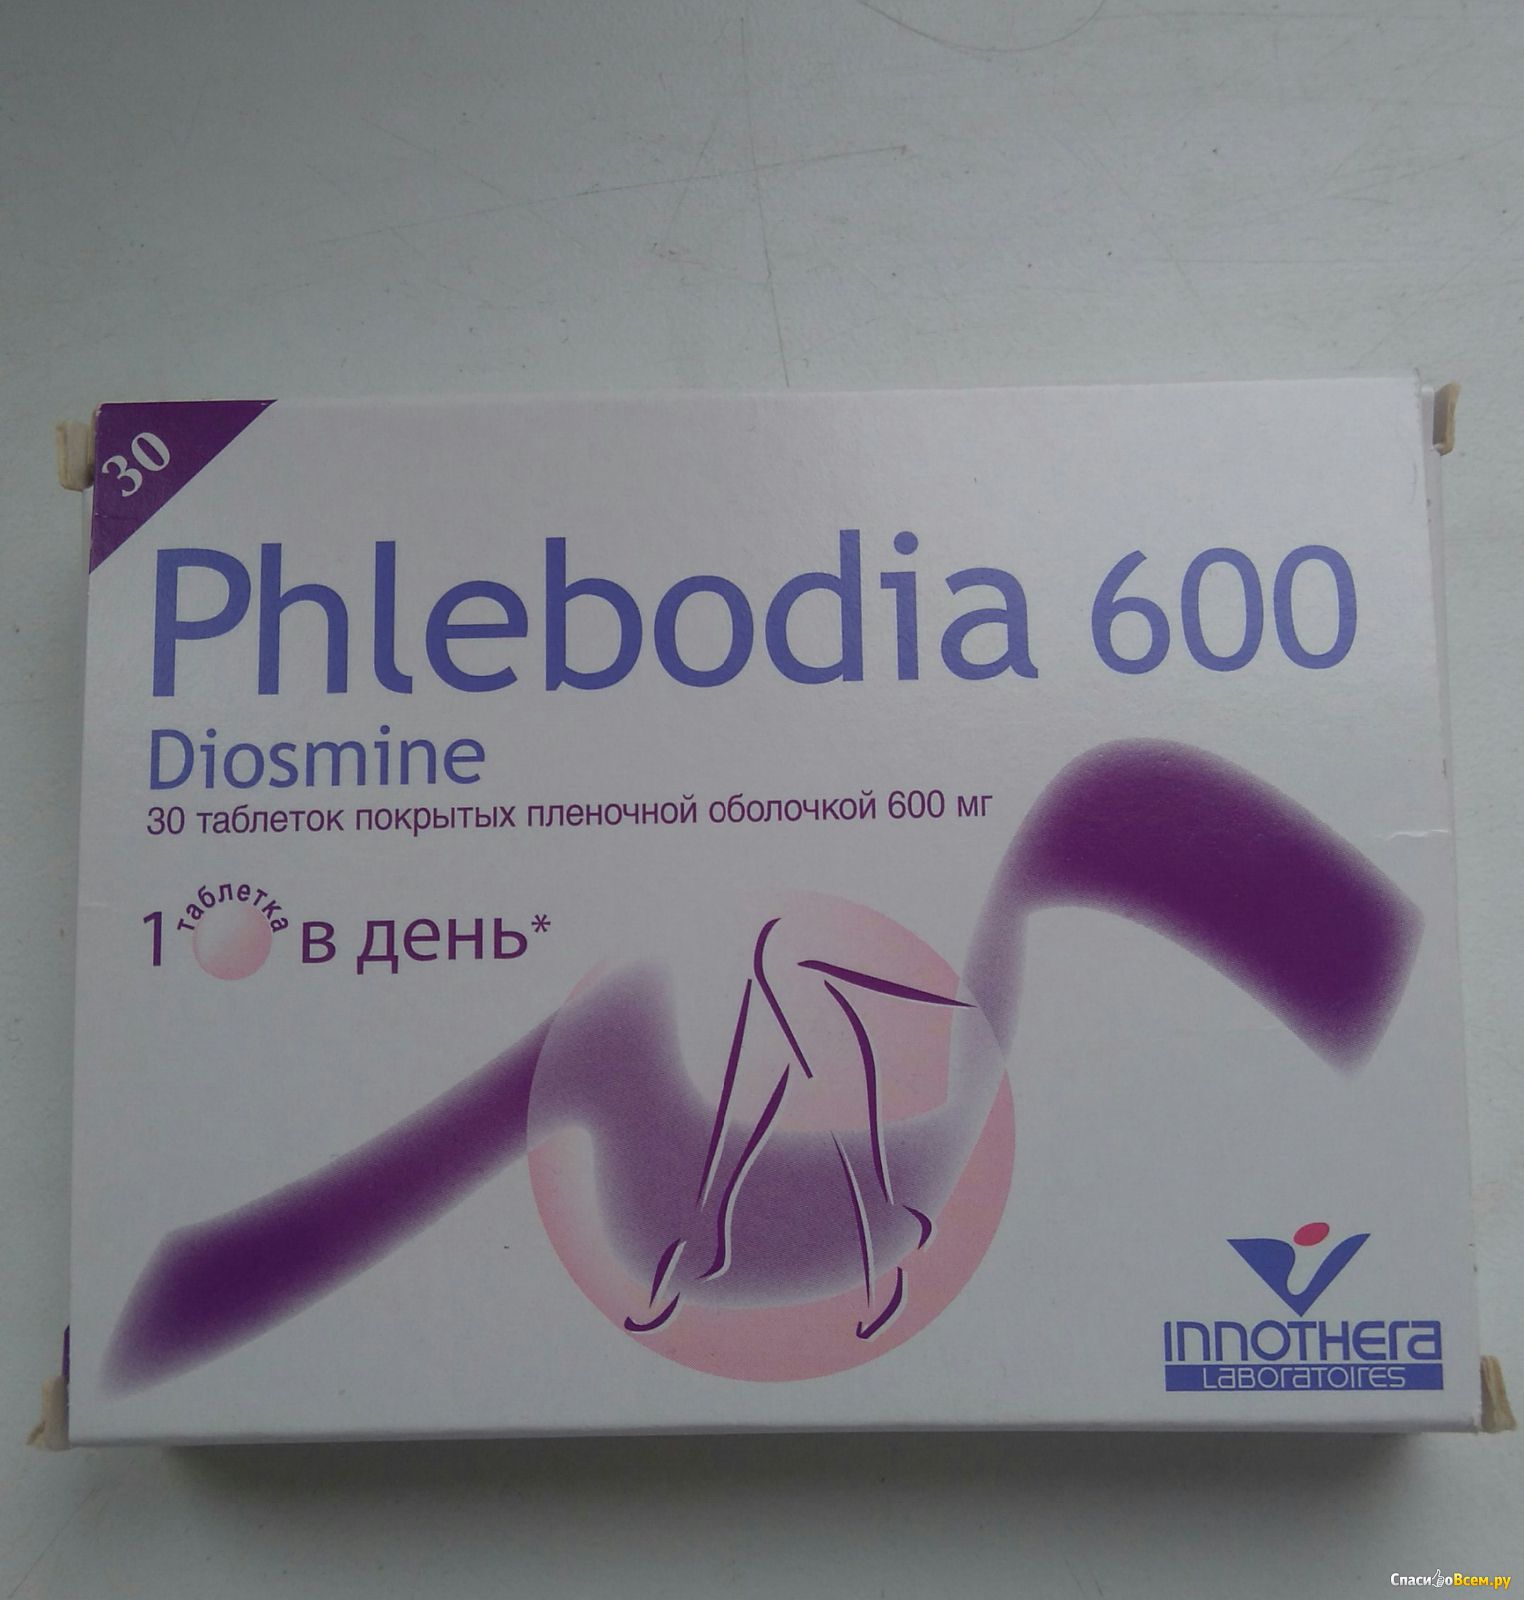 Аналоги Лекарства Флебодиа 600